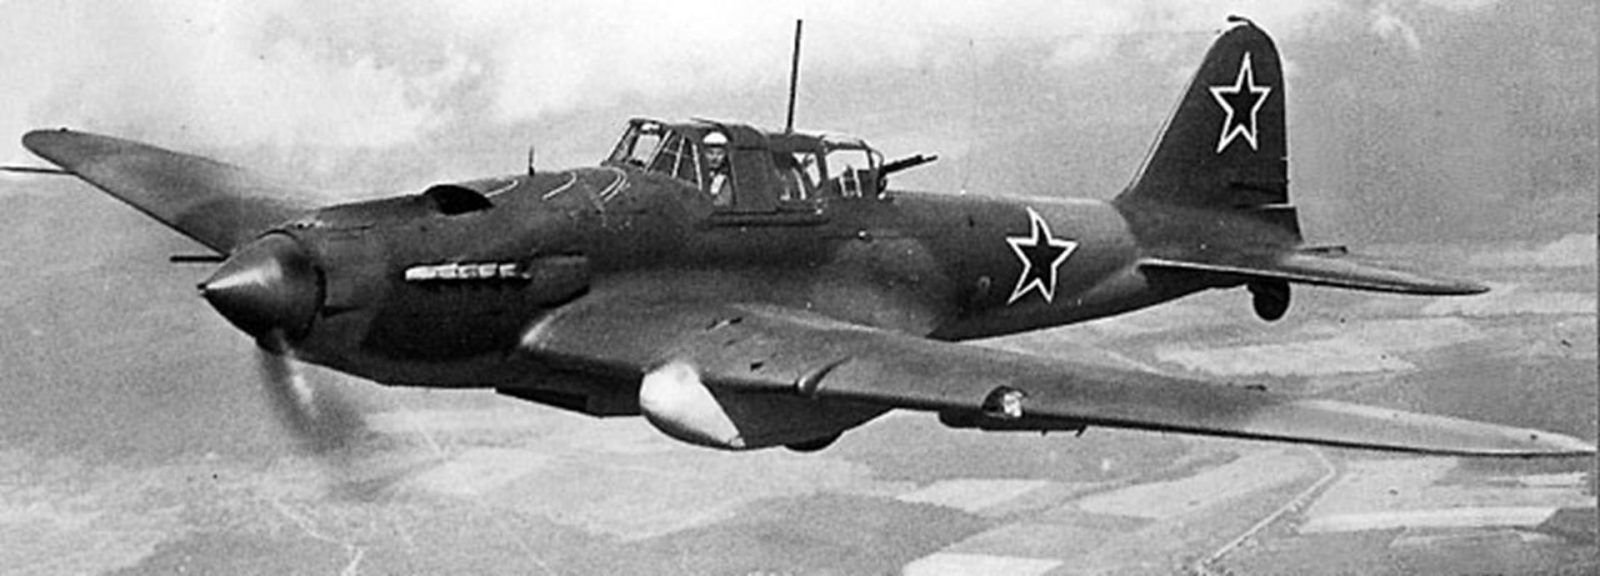 Ил-2 против ju-87